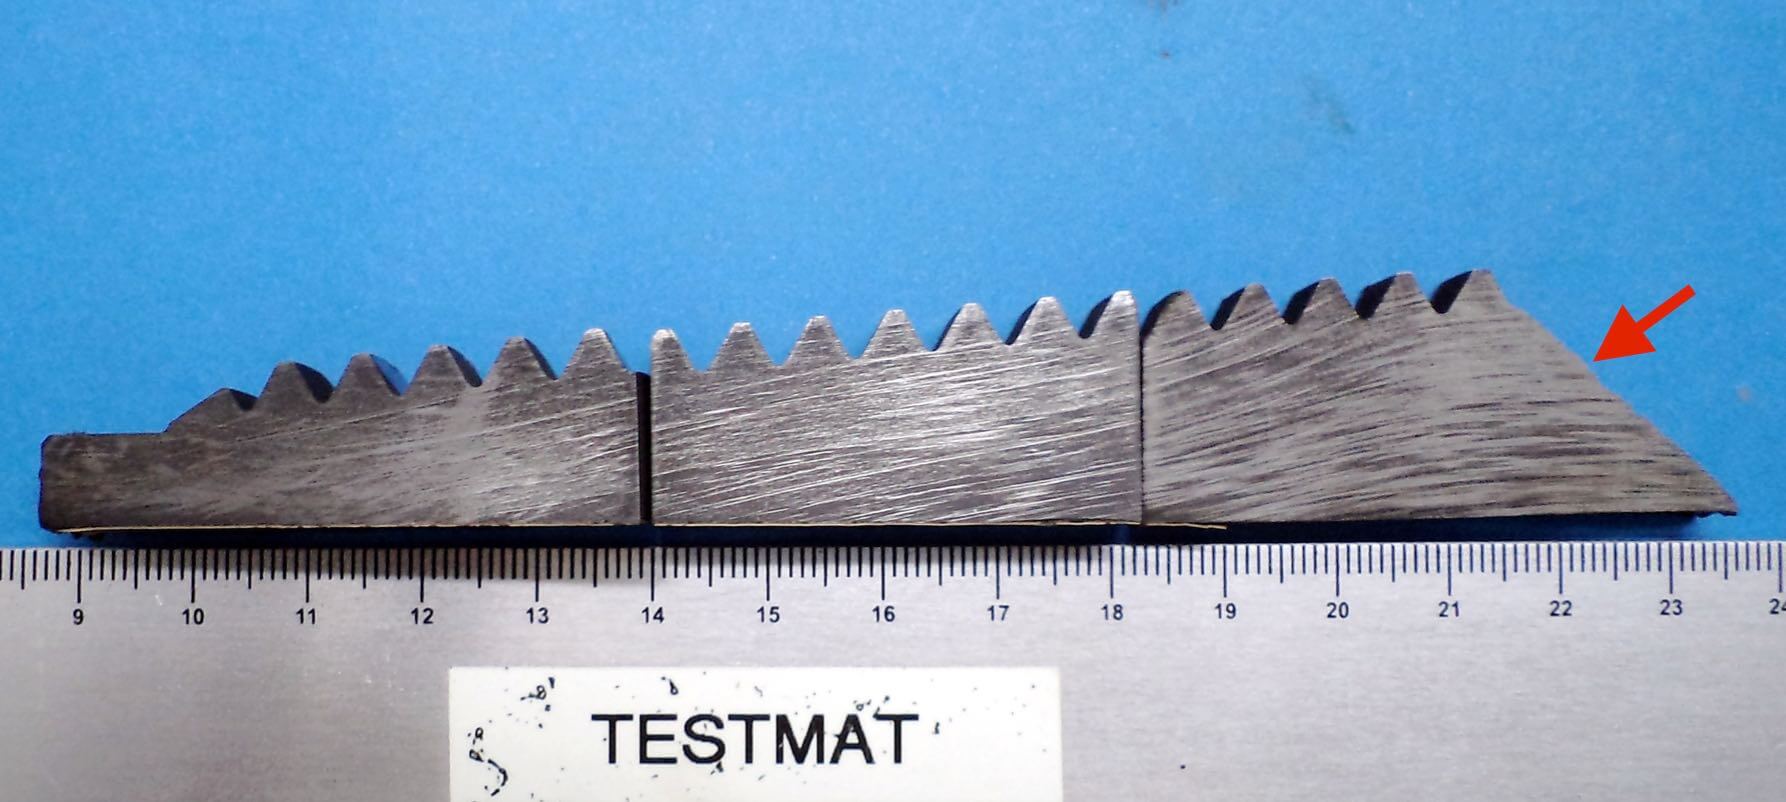 Ensaio Macrográfico indica o fibramento de um Drill Pipe (Tubo de Perfuração) onde é possível verificar o fibramento do material e seu corte na usinagem da rosca. Ataque: HCl. Aumento: 5x